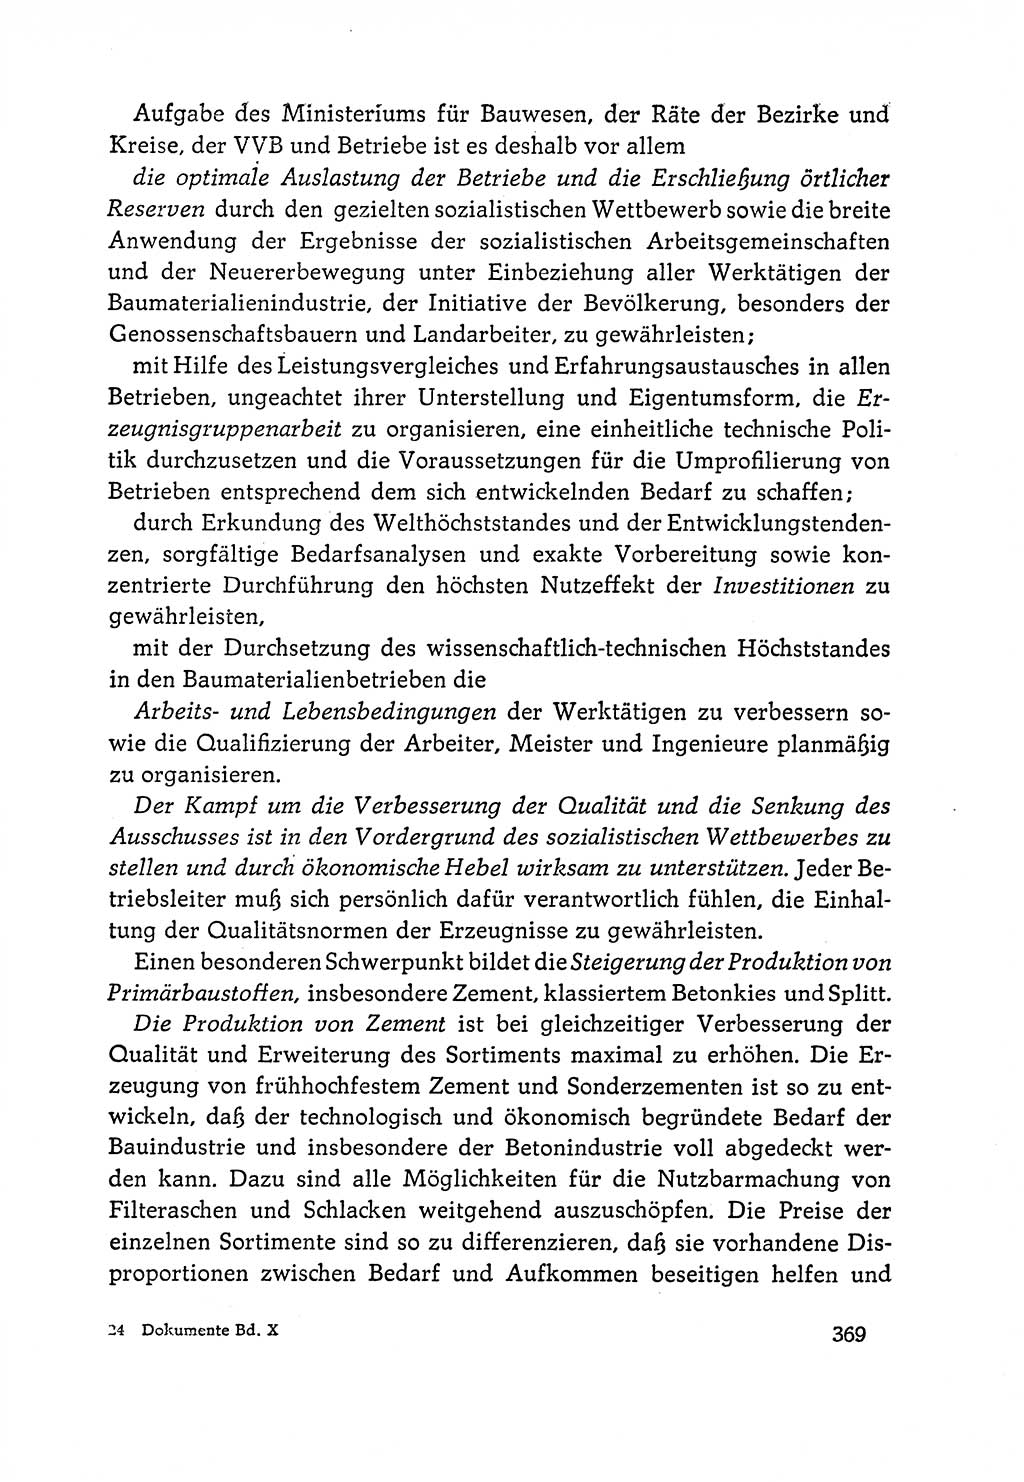 Dokumente der Sozialistischen Einheitspartei Deutschlands (SED) [Deutsche Demokratische Republik (DDR)] 1964-1965, Seite 369 (Dok. SED DDR 1964-1965, S. 369)